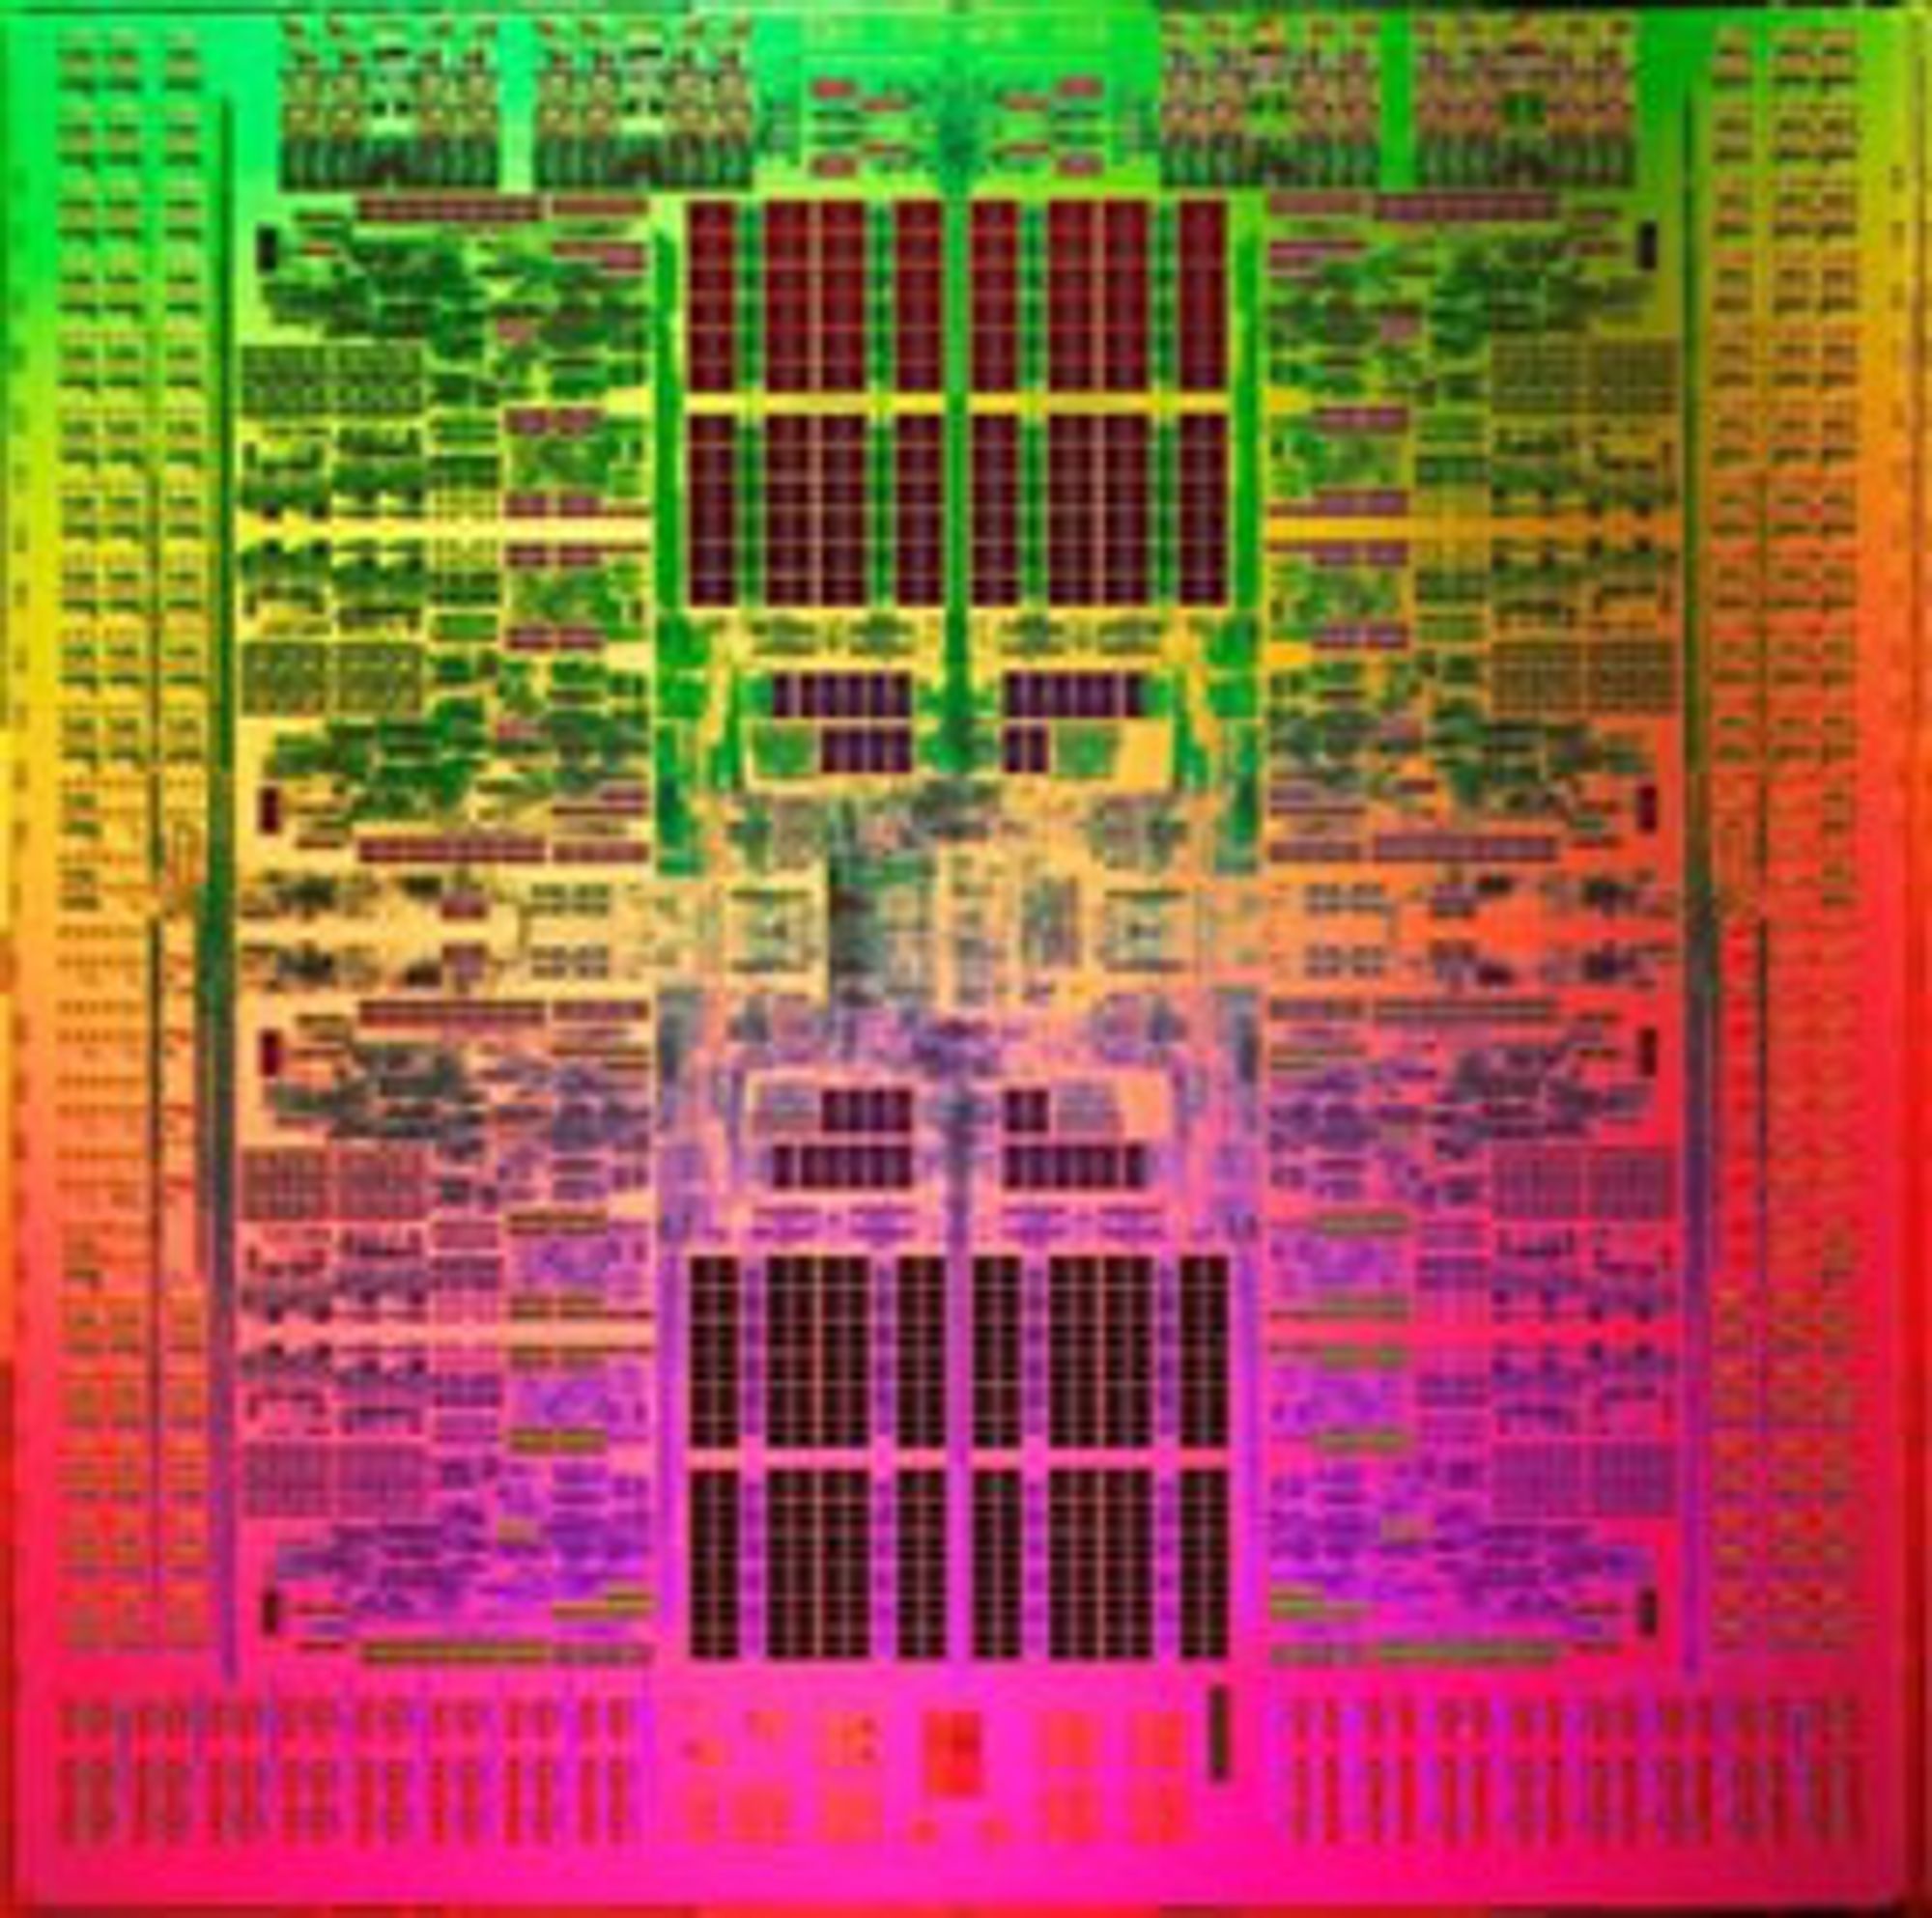 På dette spesialbehandlede bildet trer de åtte kjernene i Sparc 64 VIIIfx-prosessoren tydelig fram. K skal inneholde 80.000 prosessorer av denne typen.